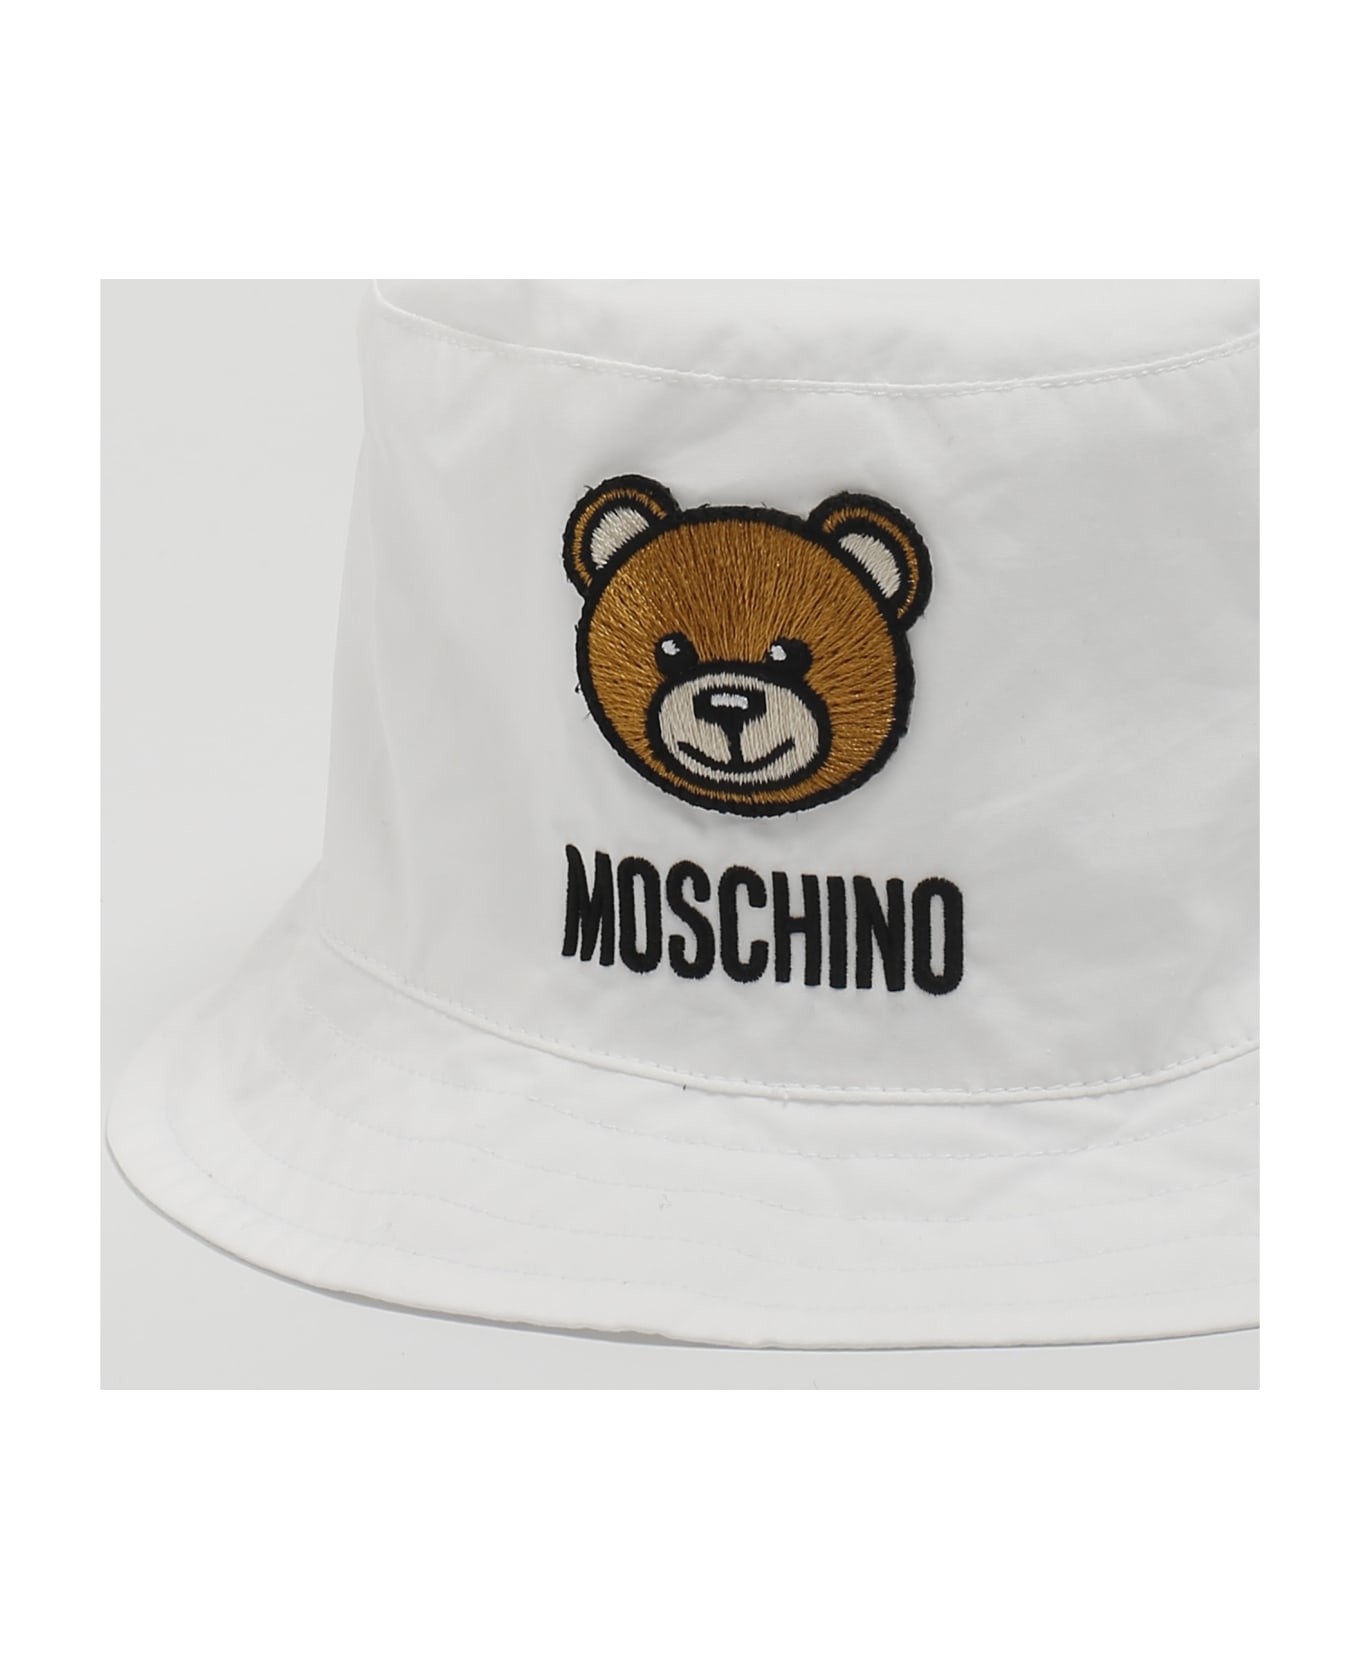 Moschino Hat Beanie - BIANCO